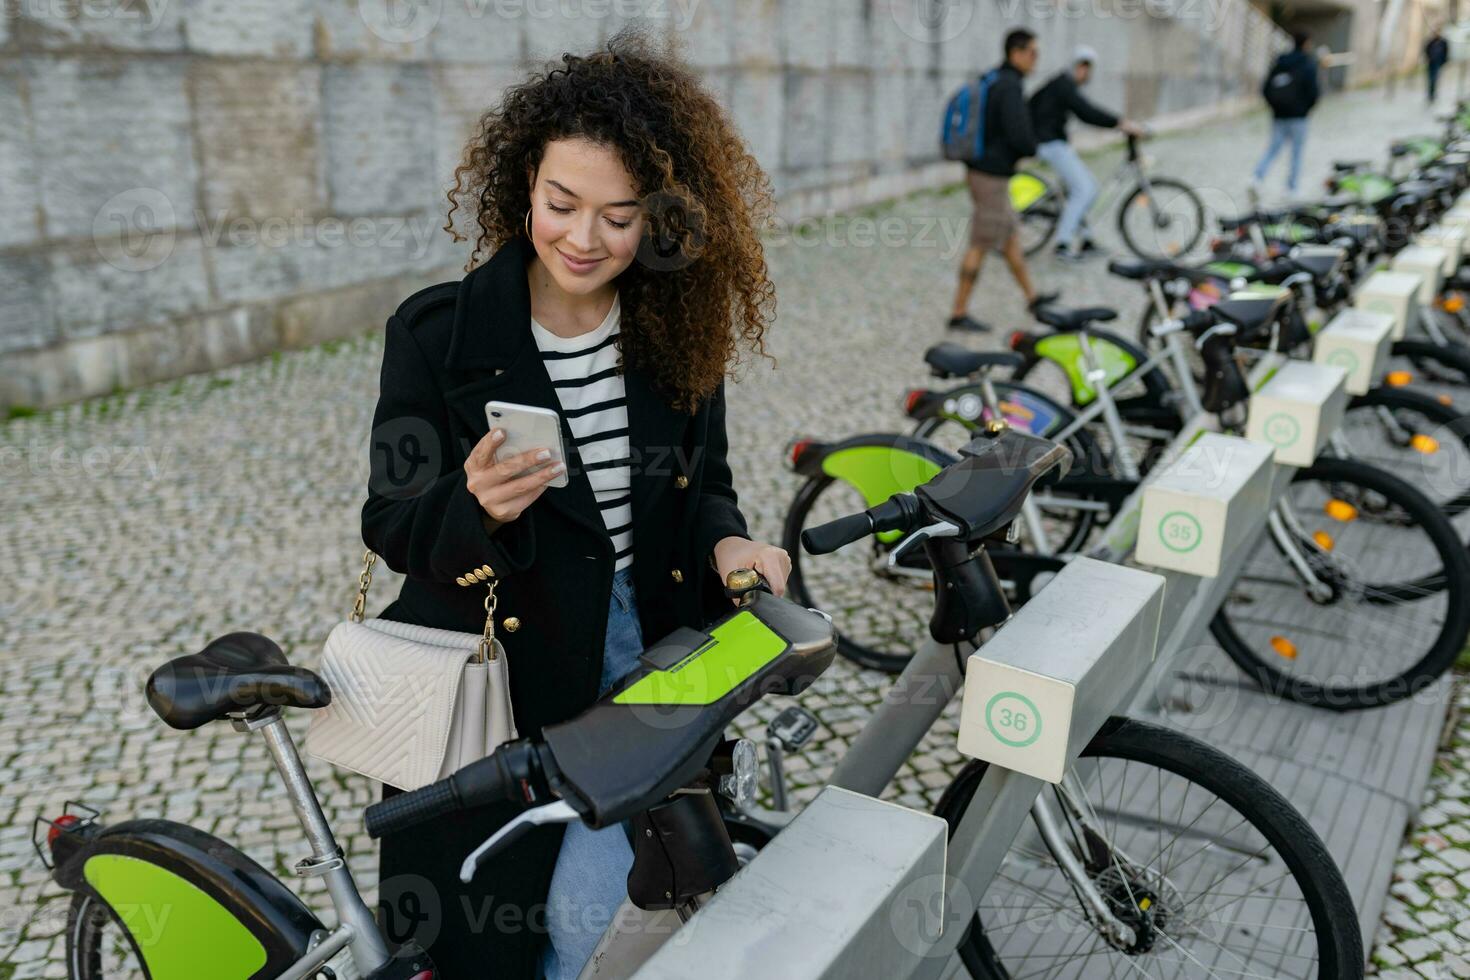 mooi gekruld vrouw huren een fiets in straat met een app foto